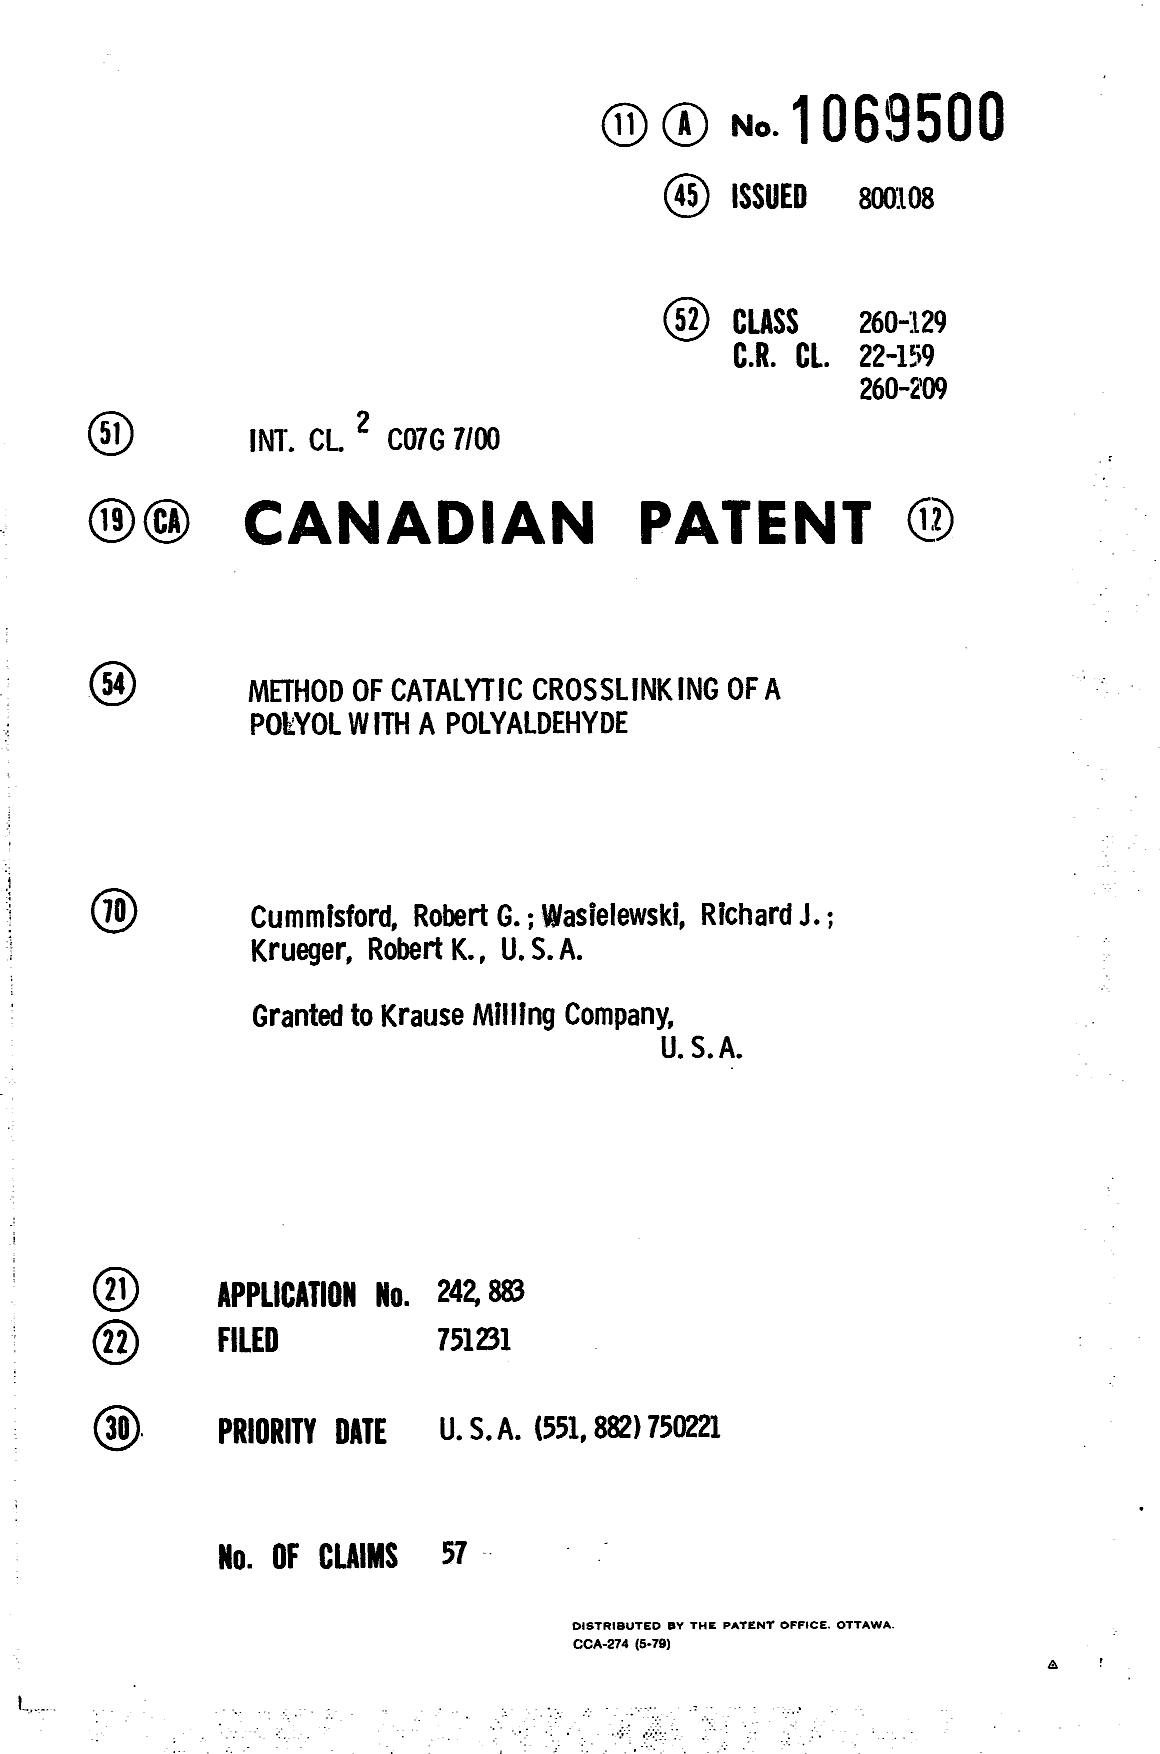 Document de brevet canadien 1069500. Page couverture 19940323. Image 1 de 1